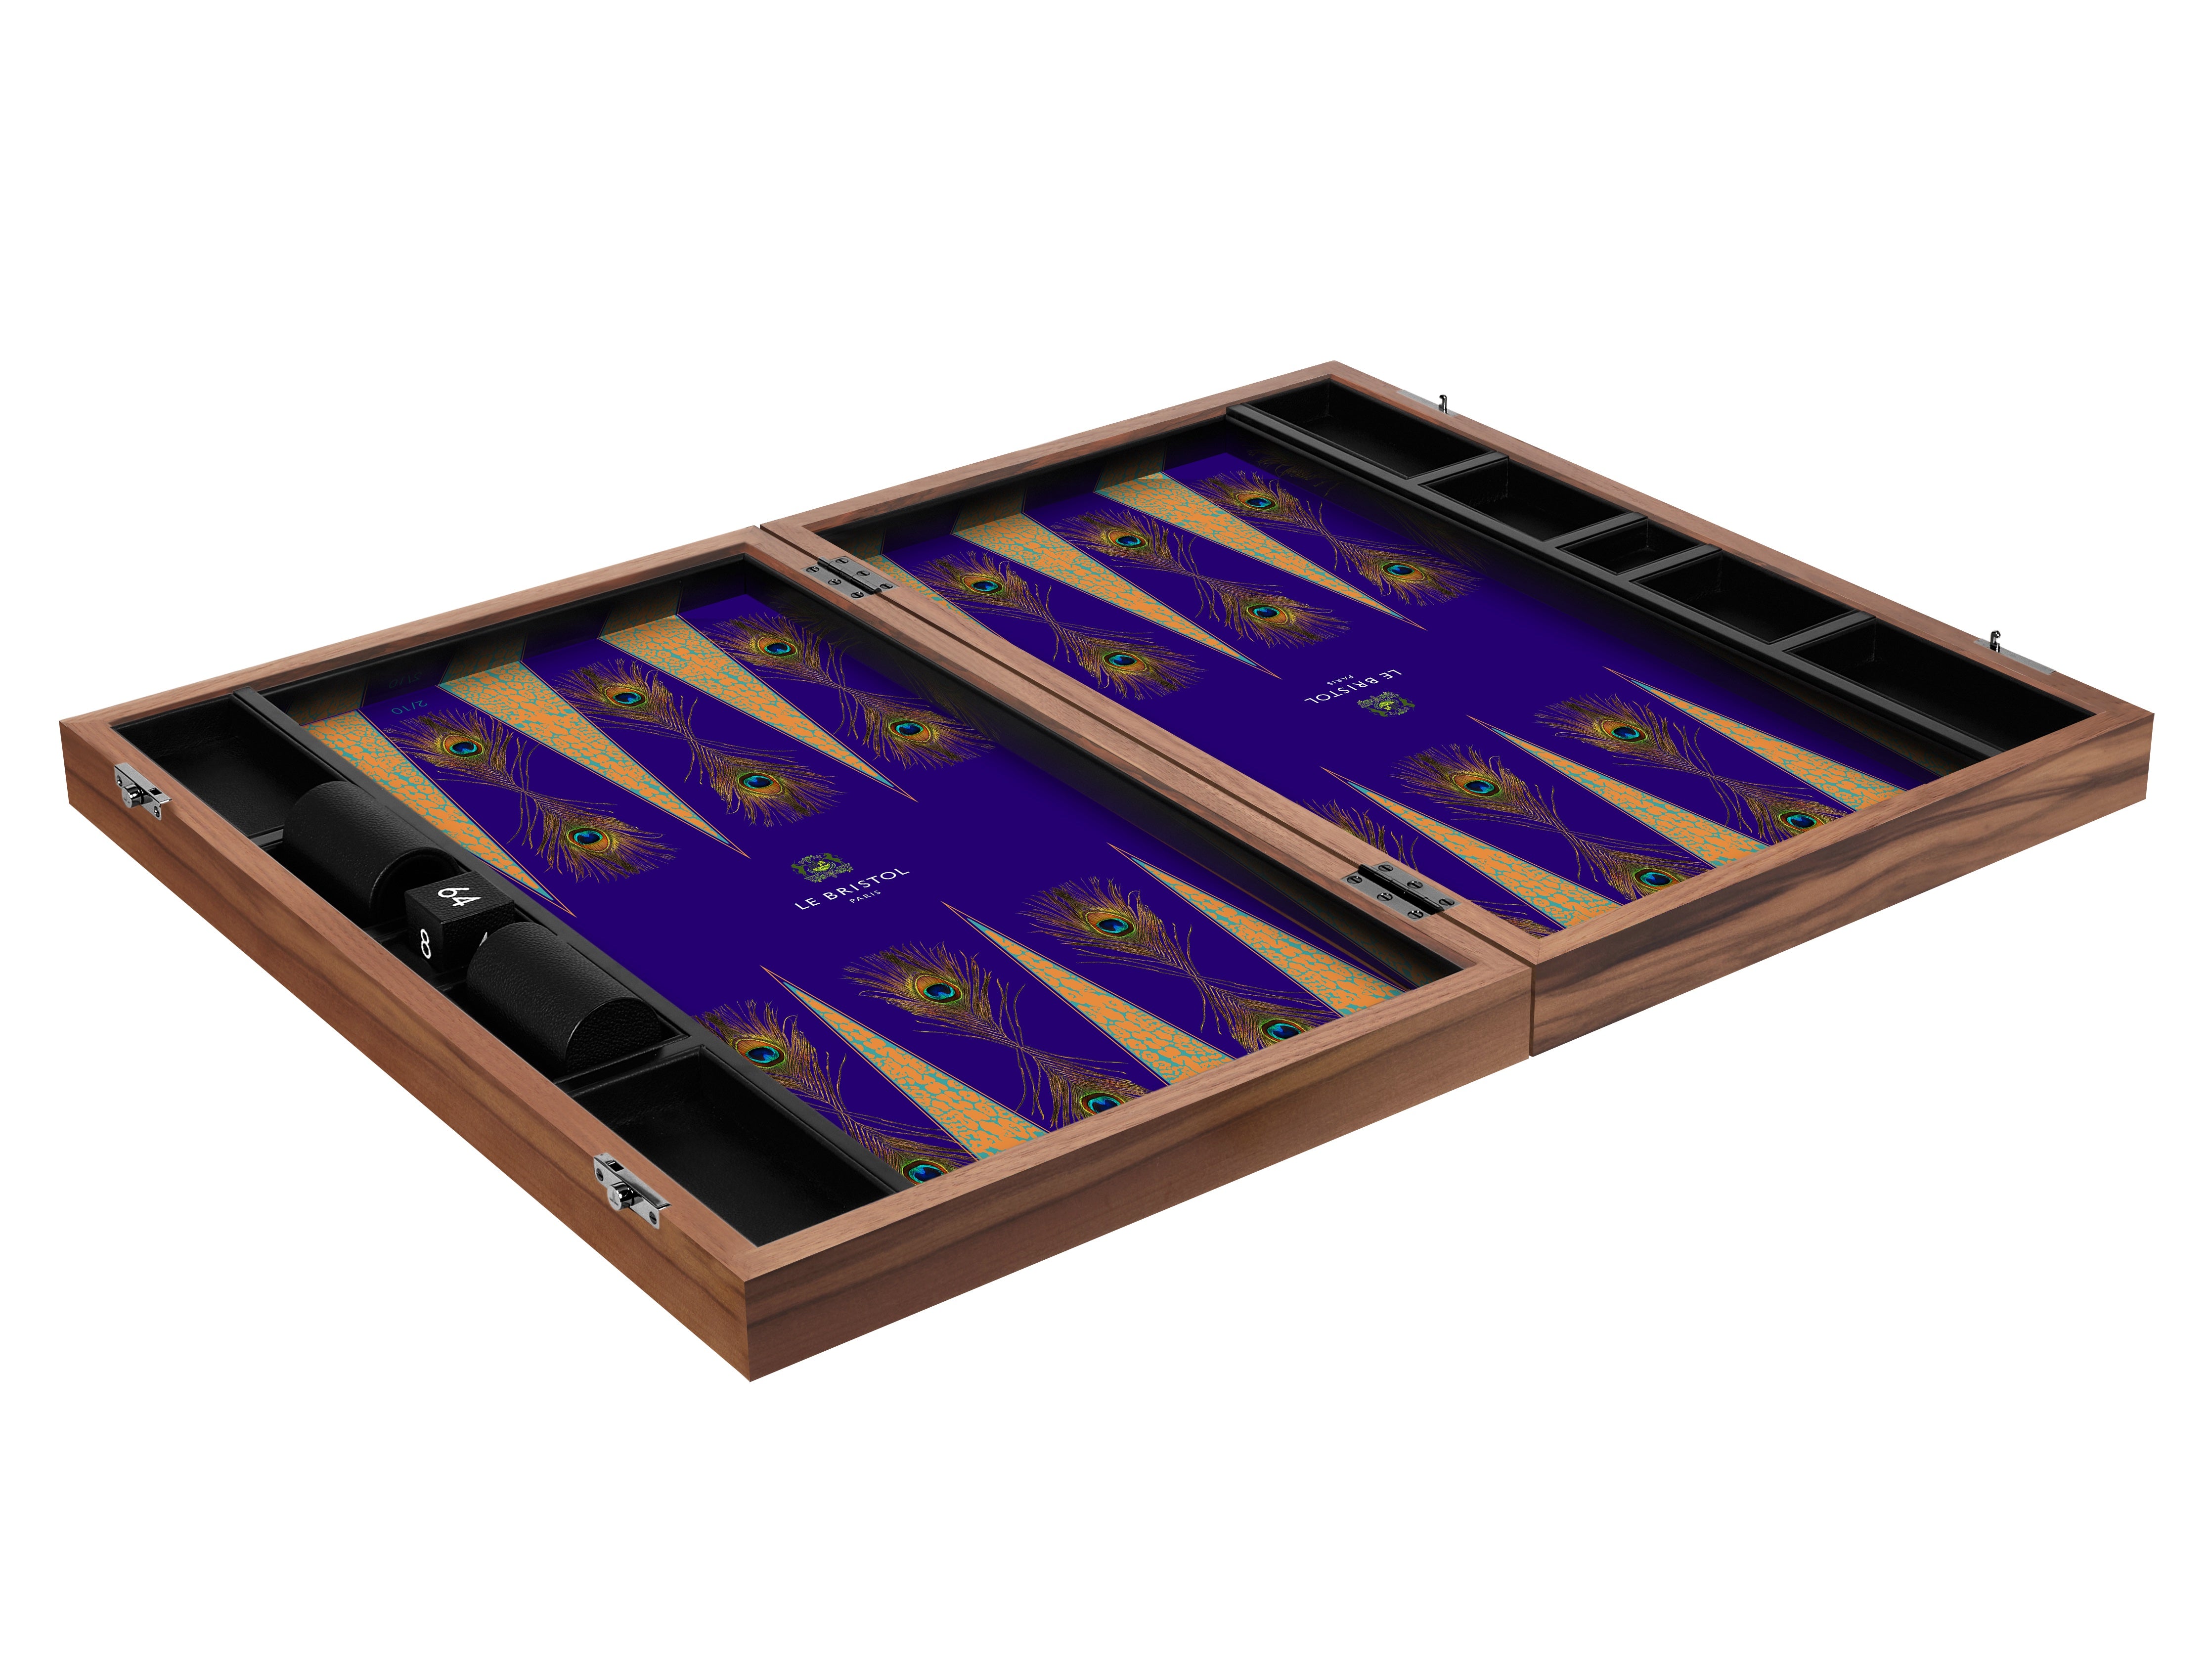 Le Bristol Paris backgammon board